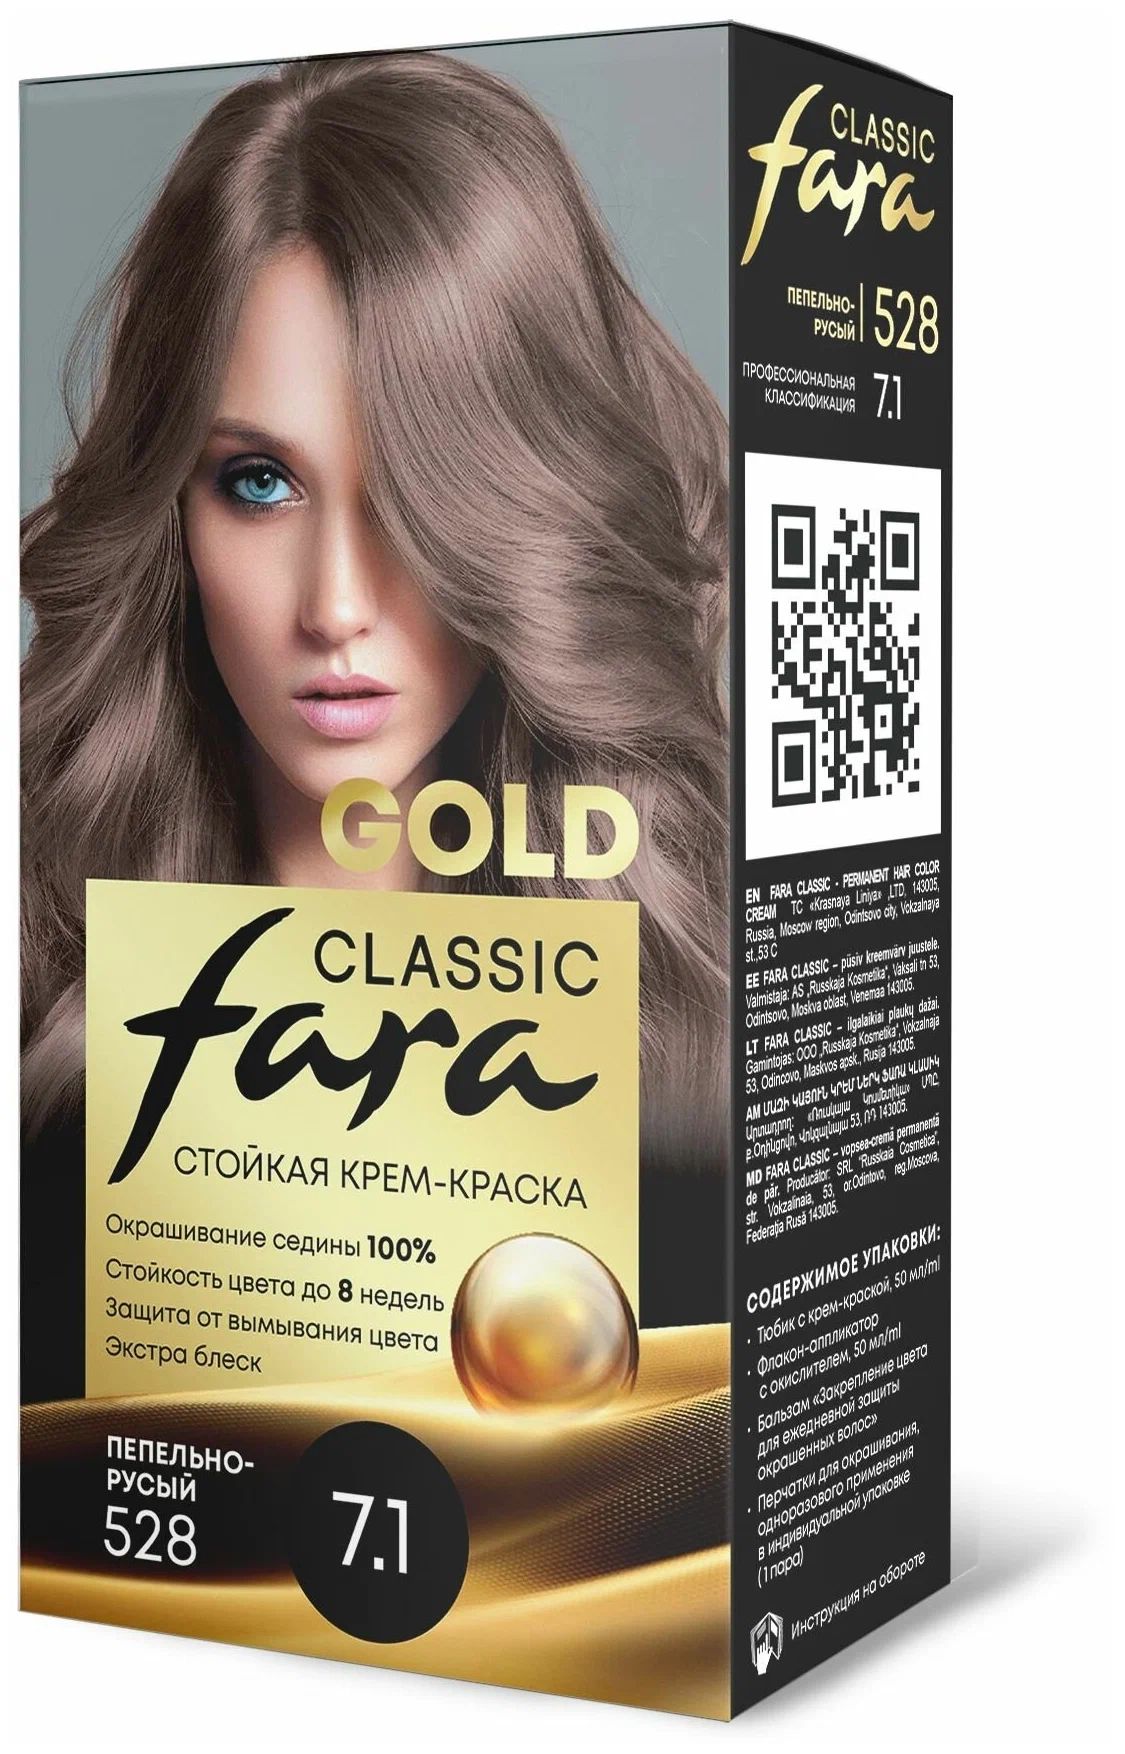 Крем-краска для волос Fara Classic Gold 528 пепельно-русый 7.1, 140 г русская религиозная аксиология